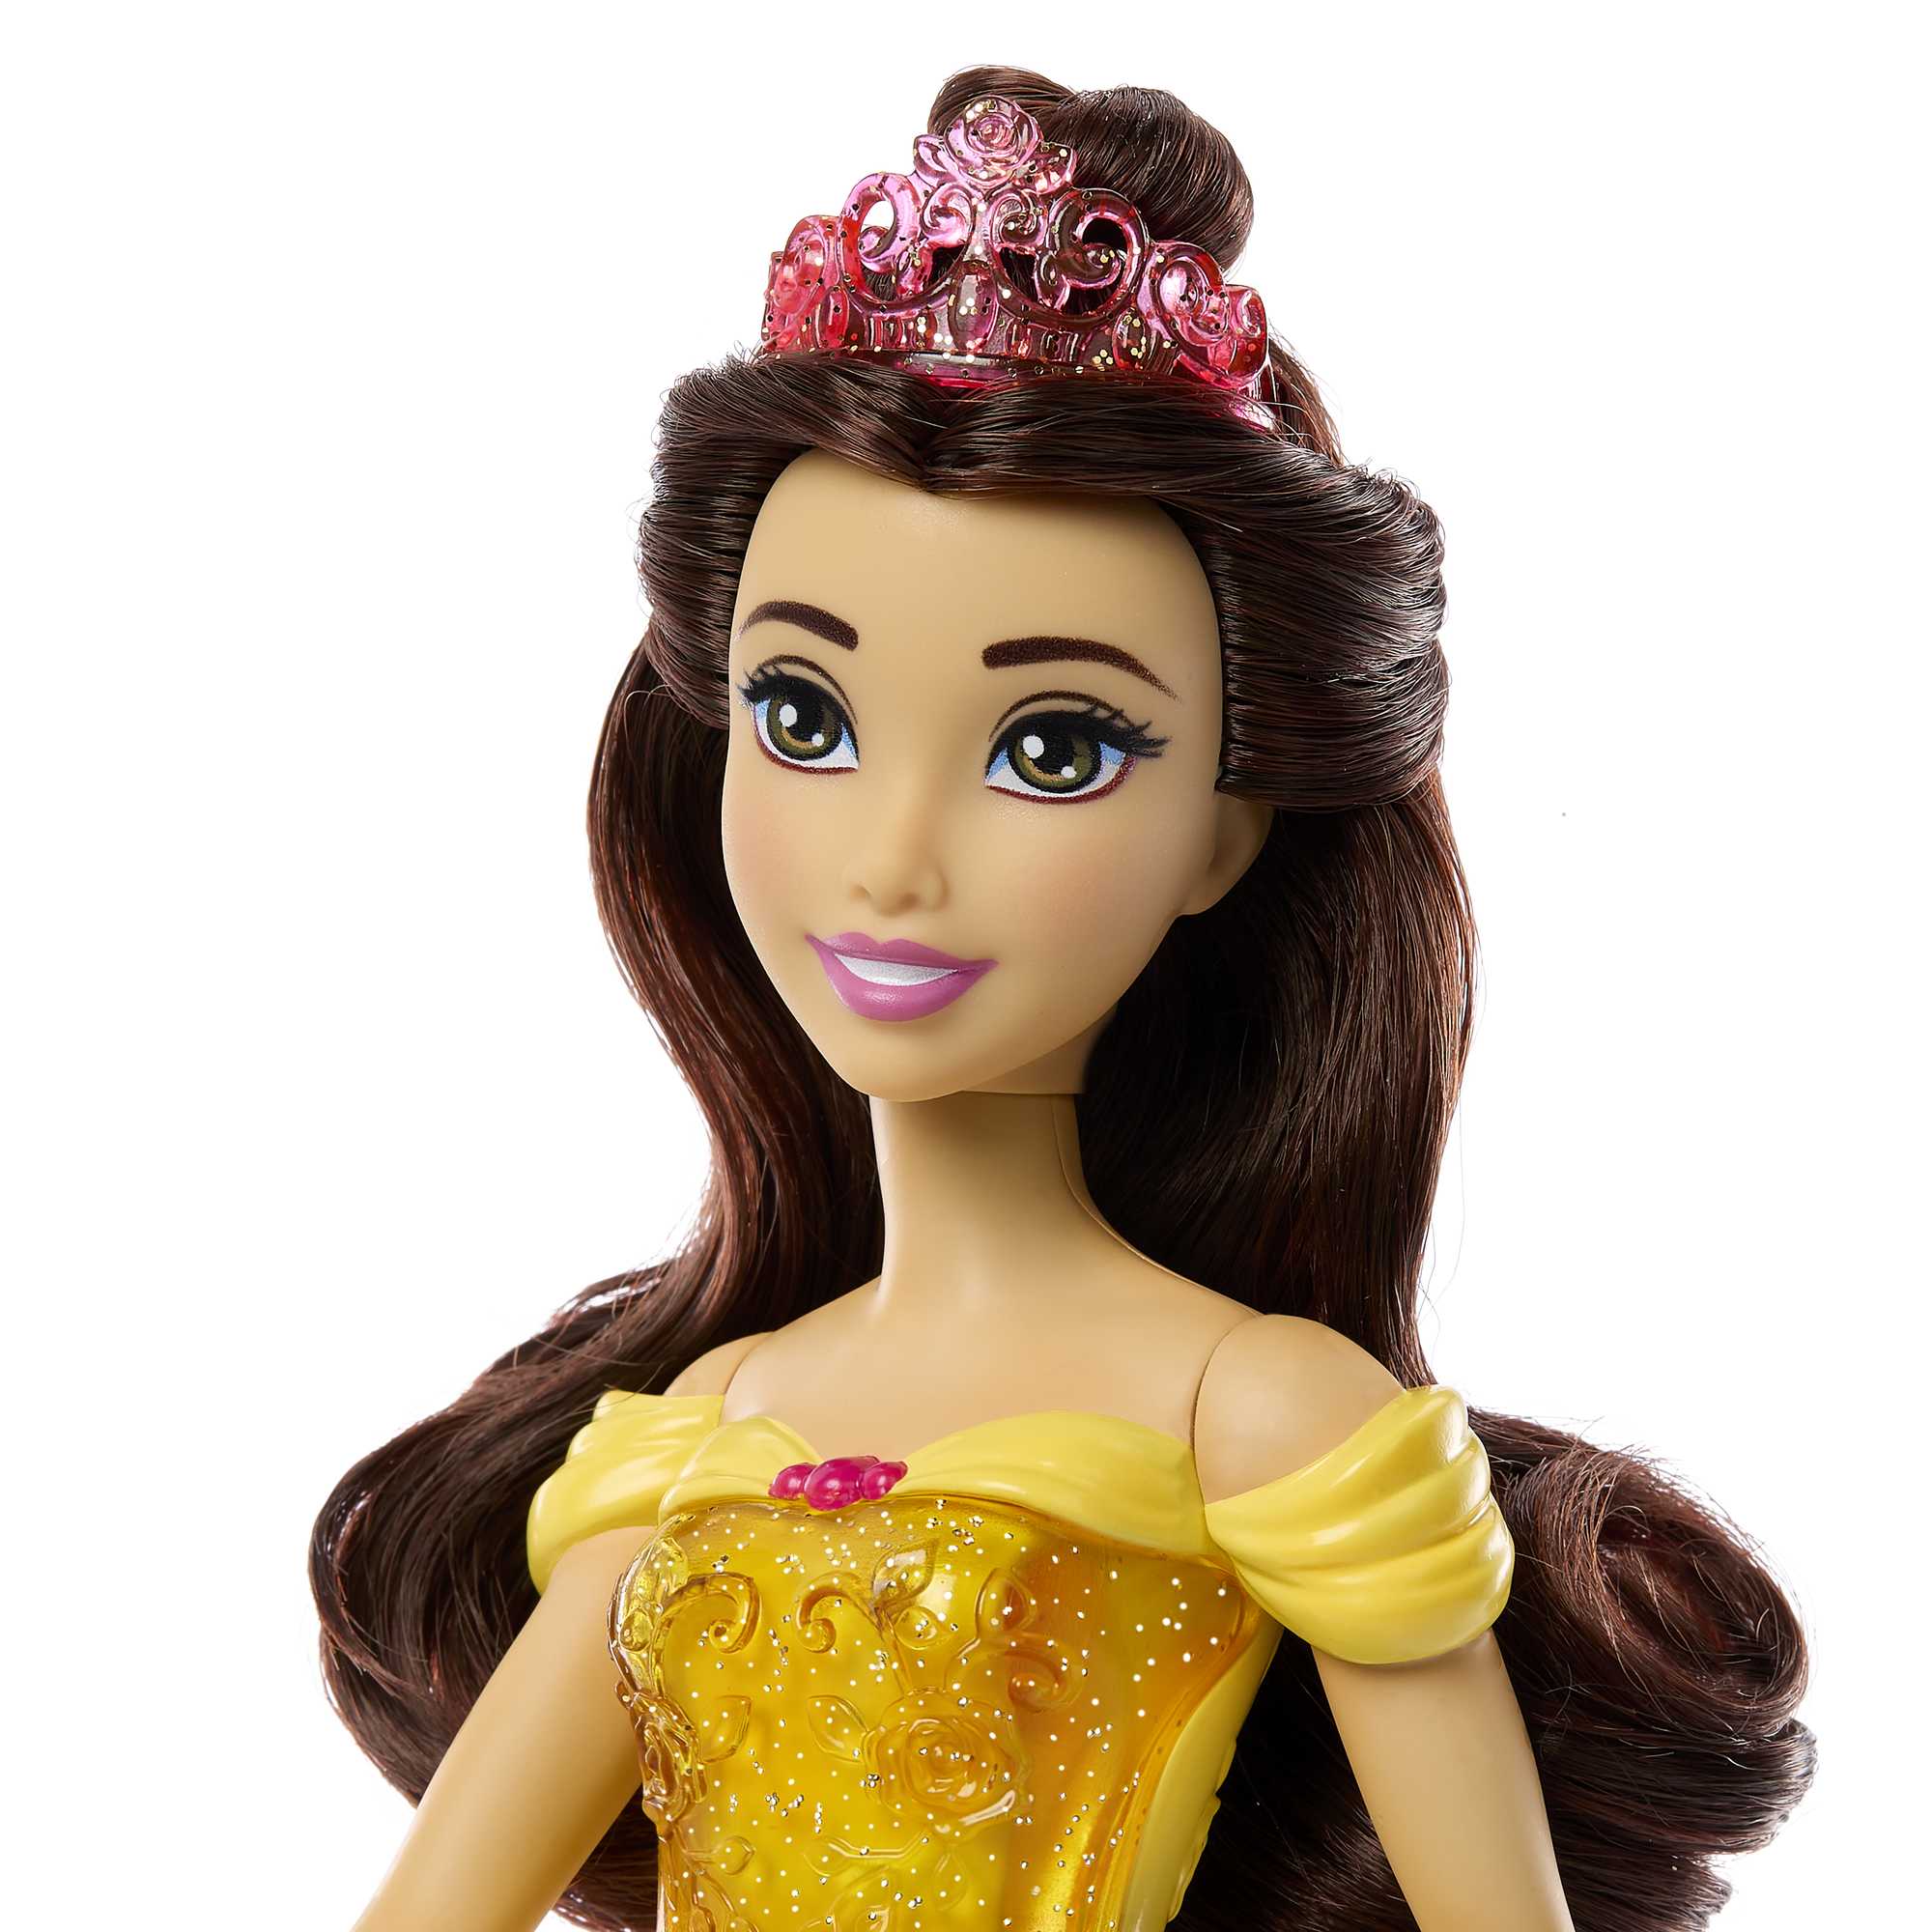 Disney Princesses - Poupée Belle